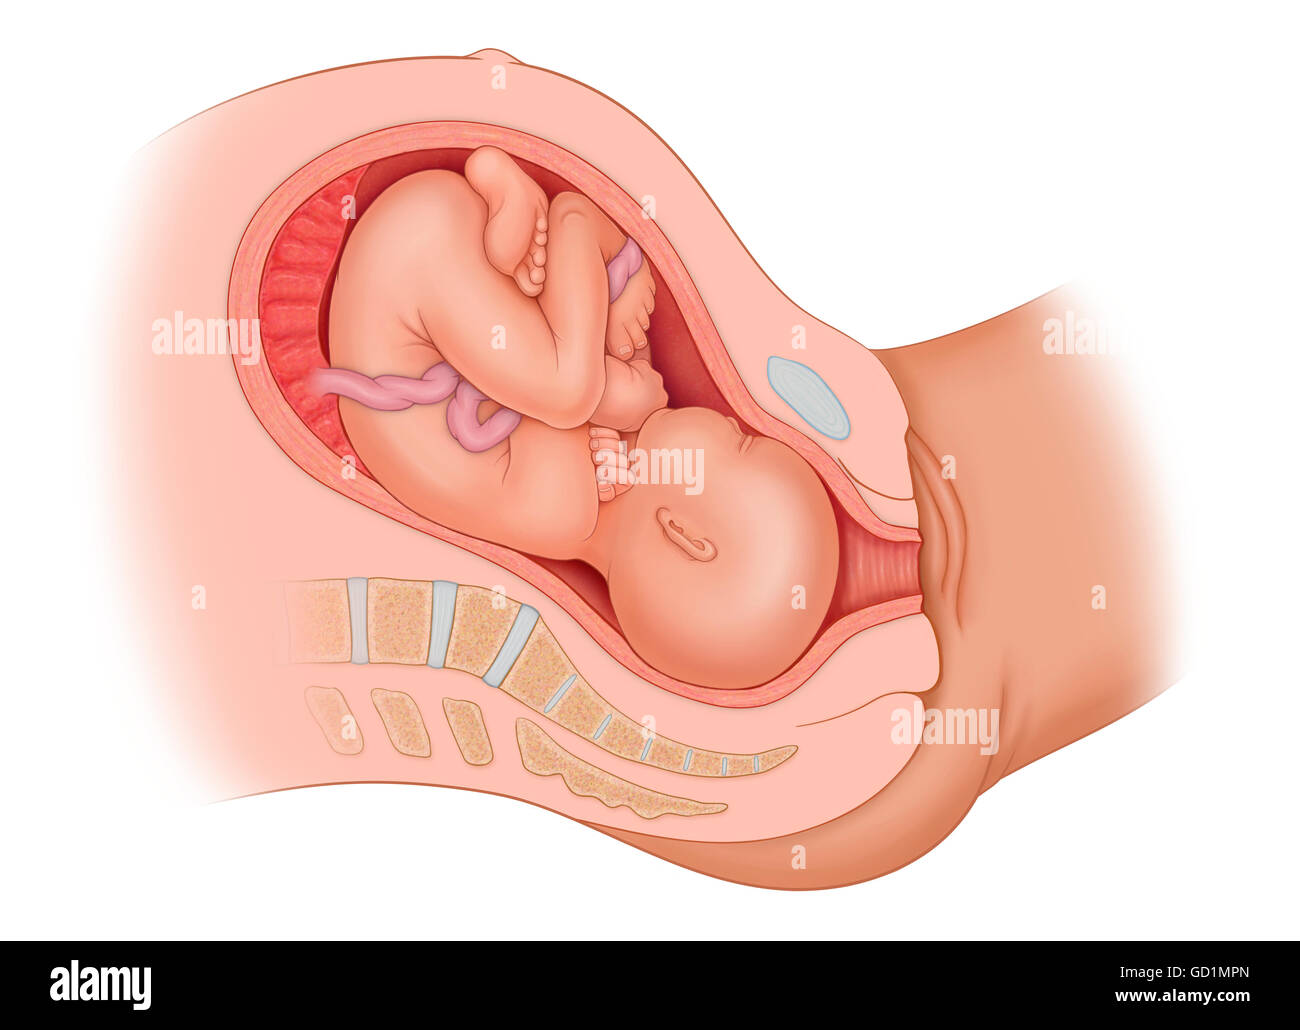 Sezione trasversale della madre's anatomy che mostra il bambino in uteruo ROP, in posizione errata Foto Stock